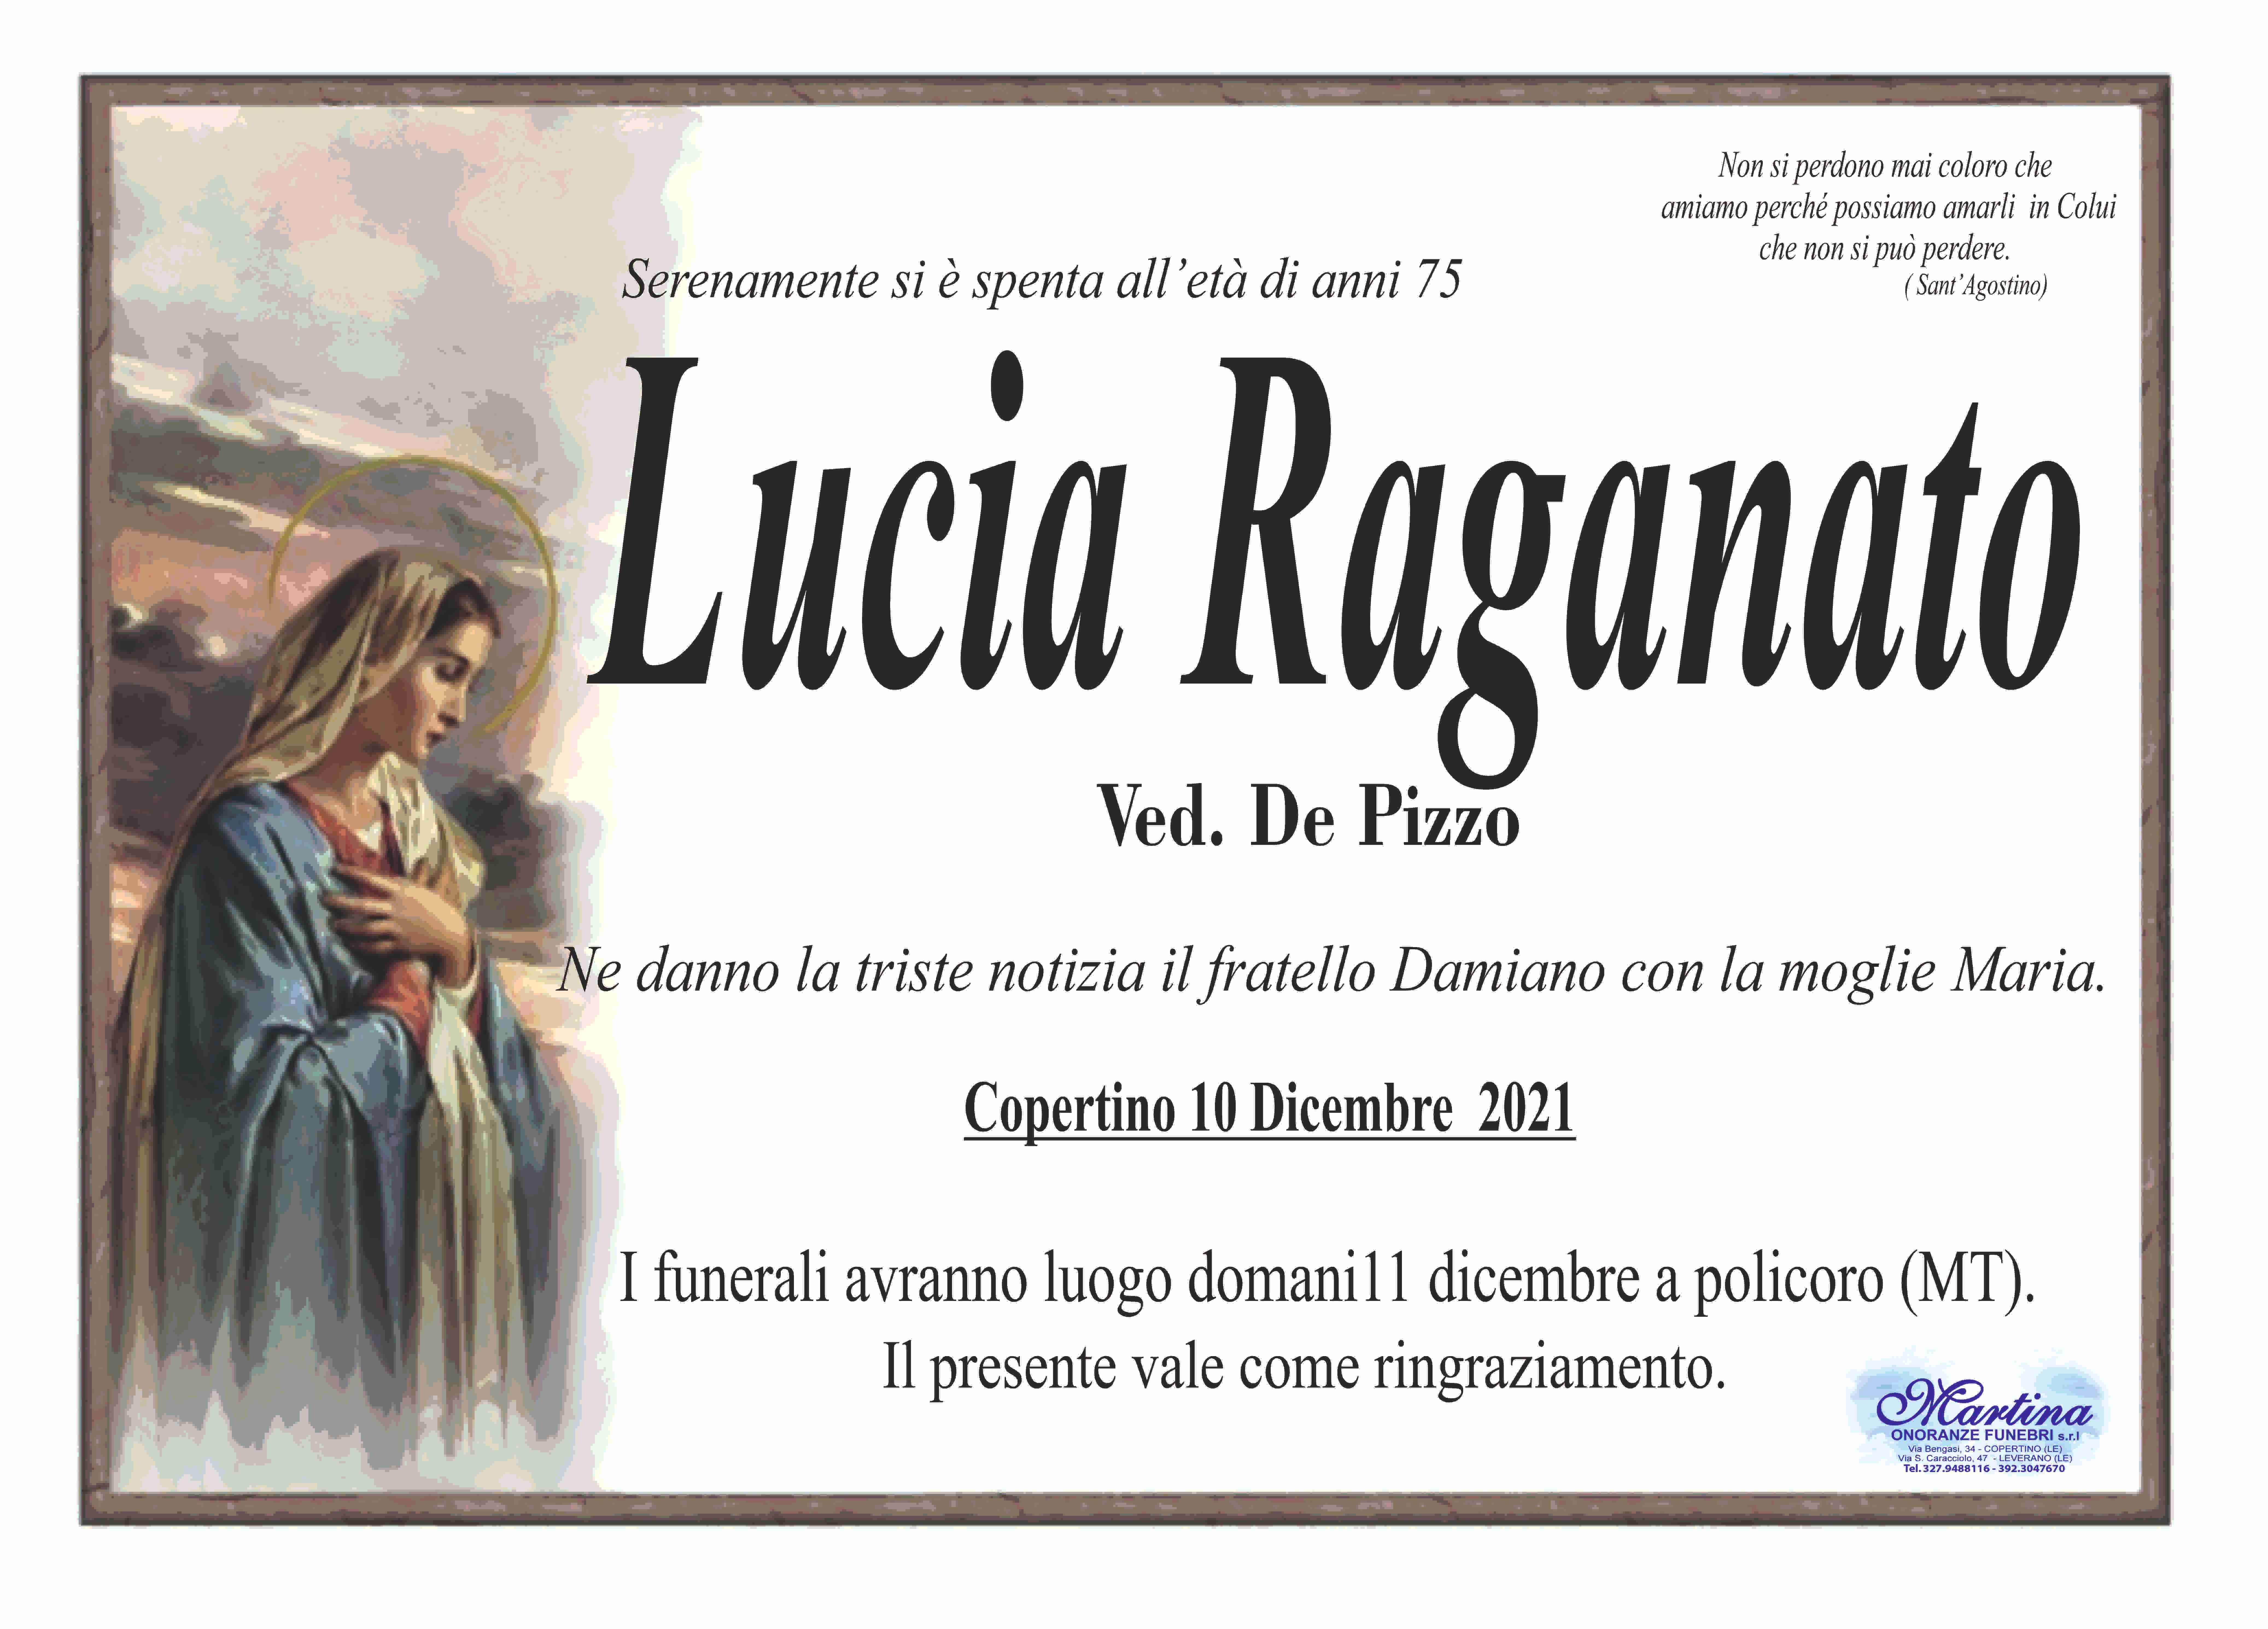 Lucia Raganato